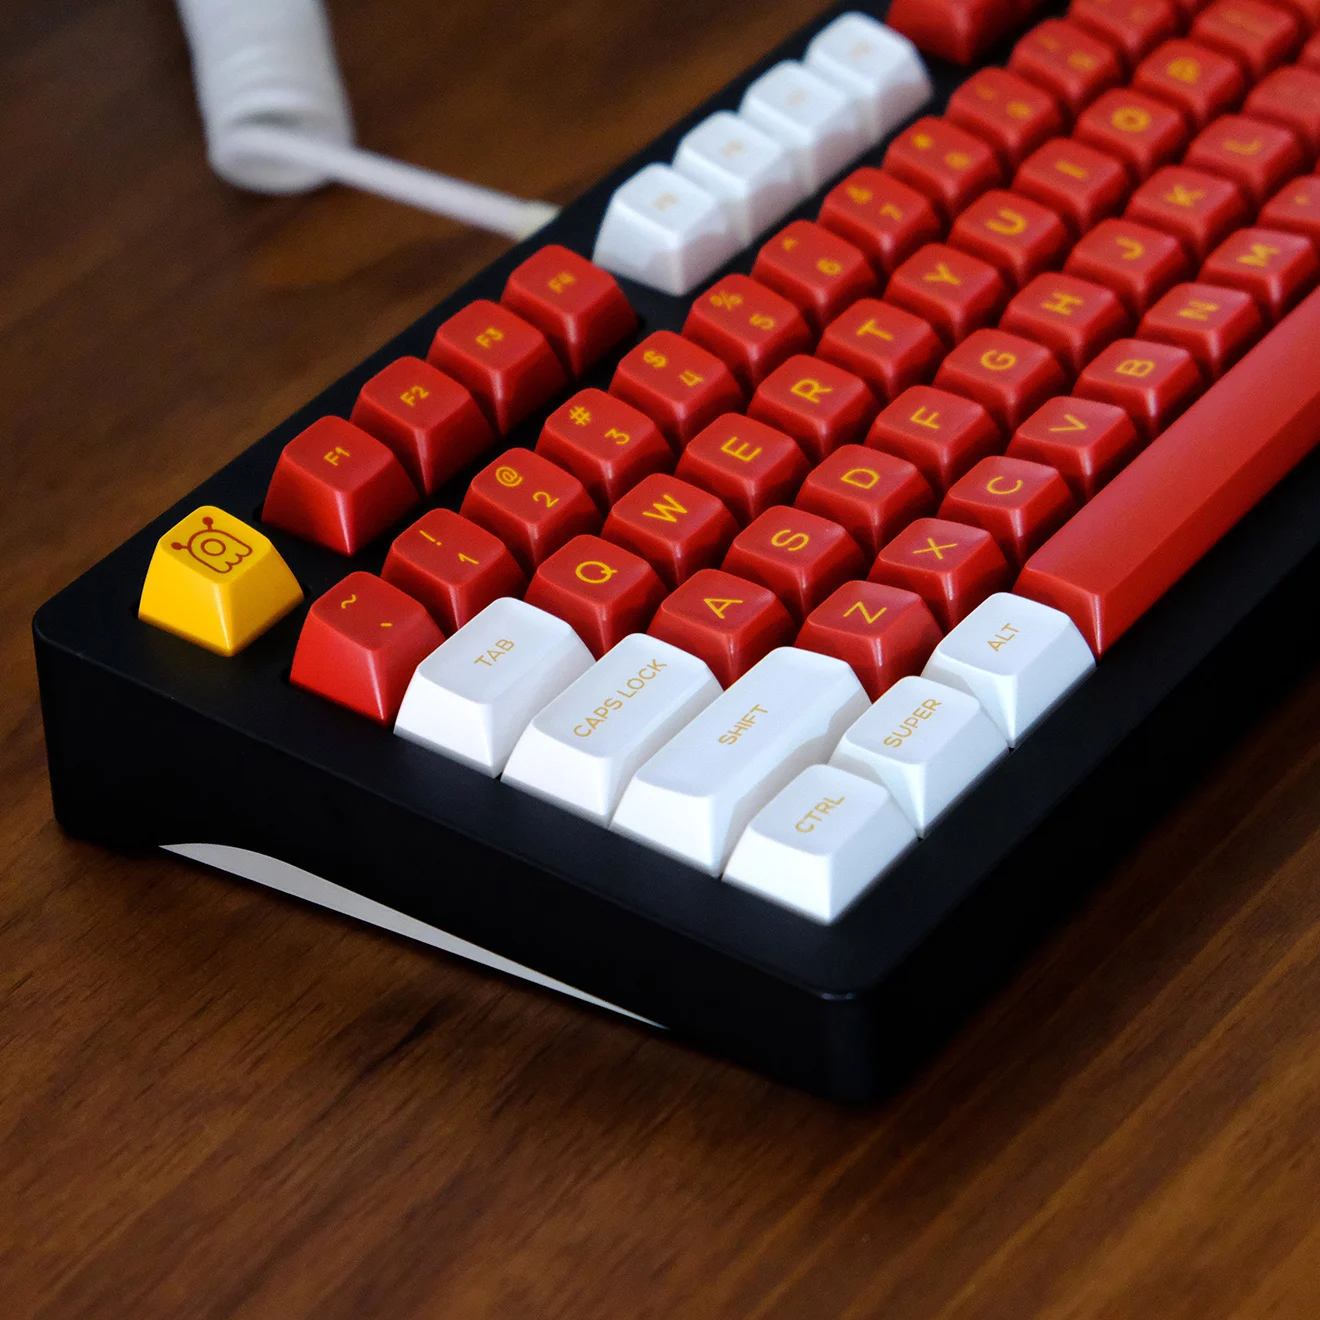 

Колпачки для клавиш 160 клавиш SA EVA 02, белые, красные, желтые колпачки для клавиш GMK PBT Double Shot ISO колпачки для клавиш Mx Switch, колпачки для механических клавиатур